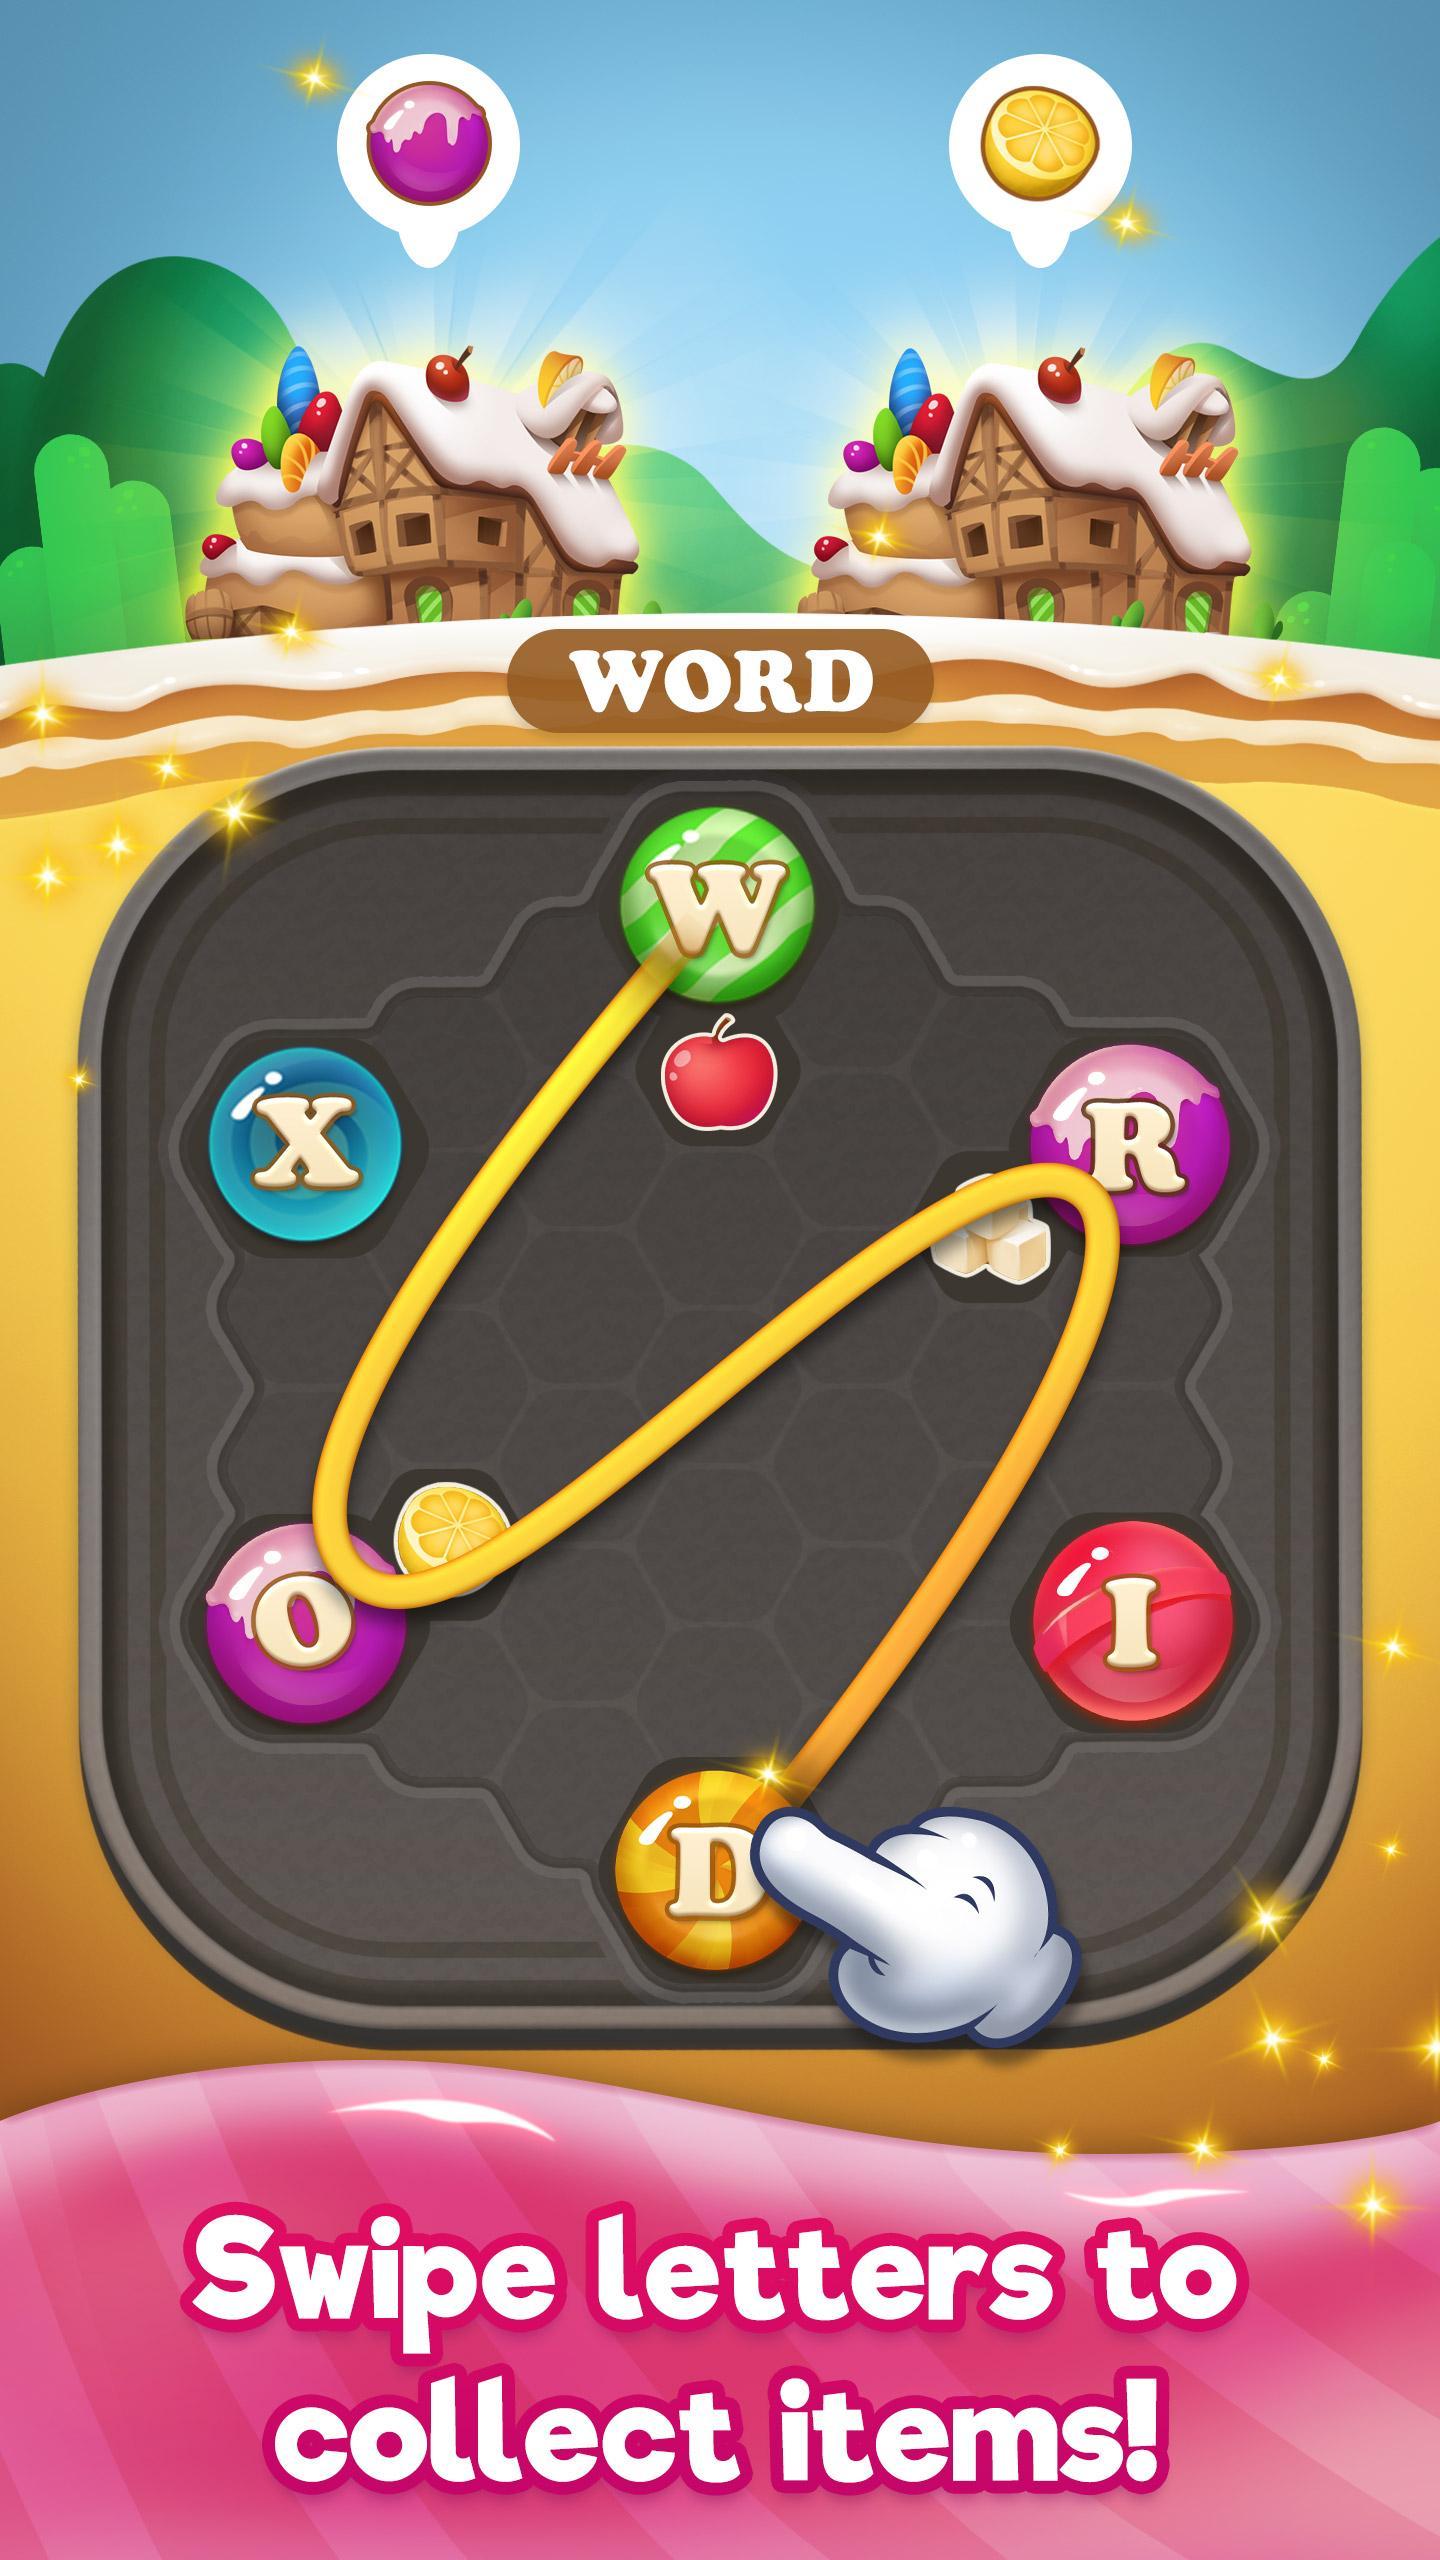 Screenshot 1 of Hi Word Blast - Trò chơi giải đố trí não bằng kẹo 1.0.9